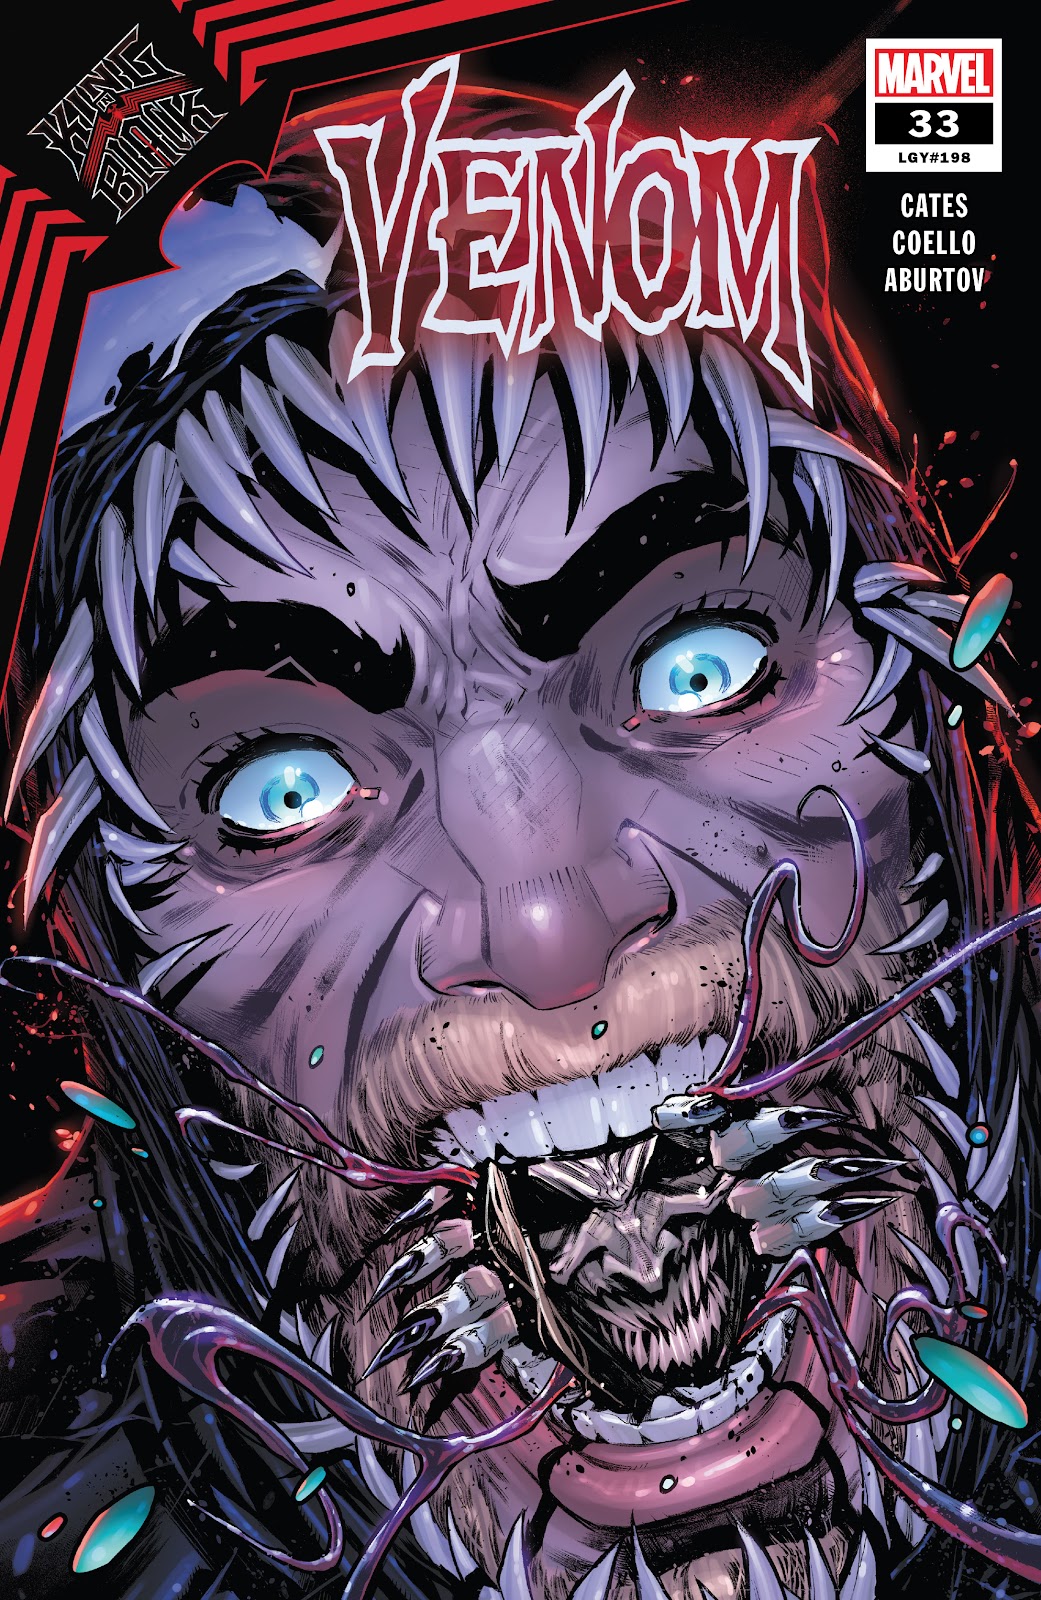 Venom (2018) issue 33 - Page 1